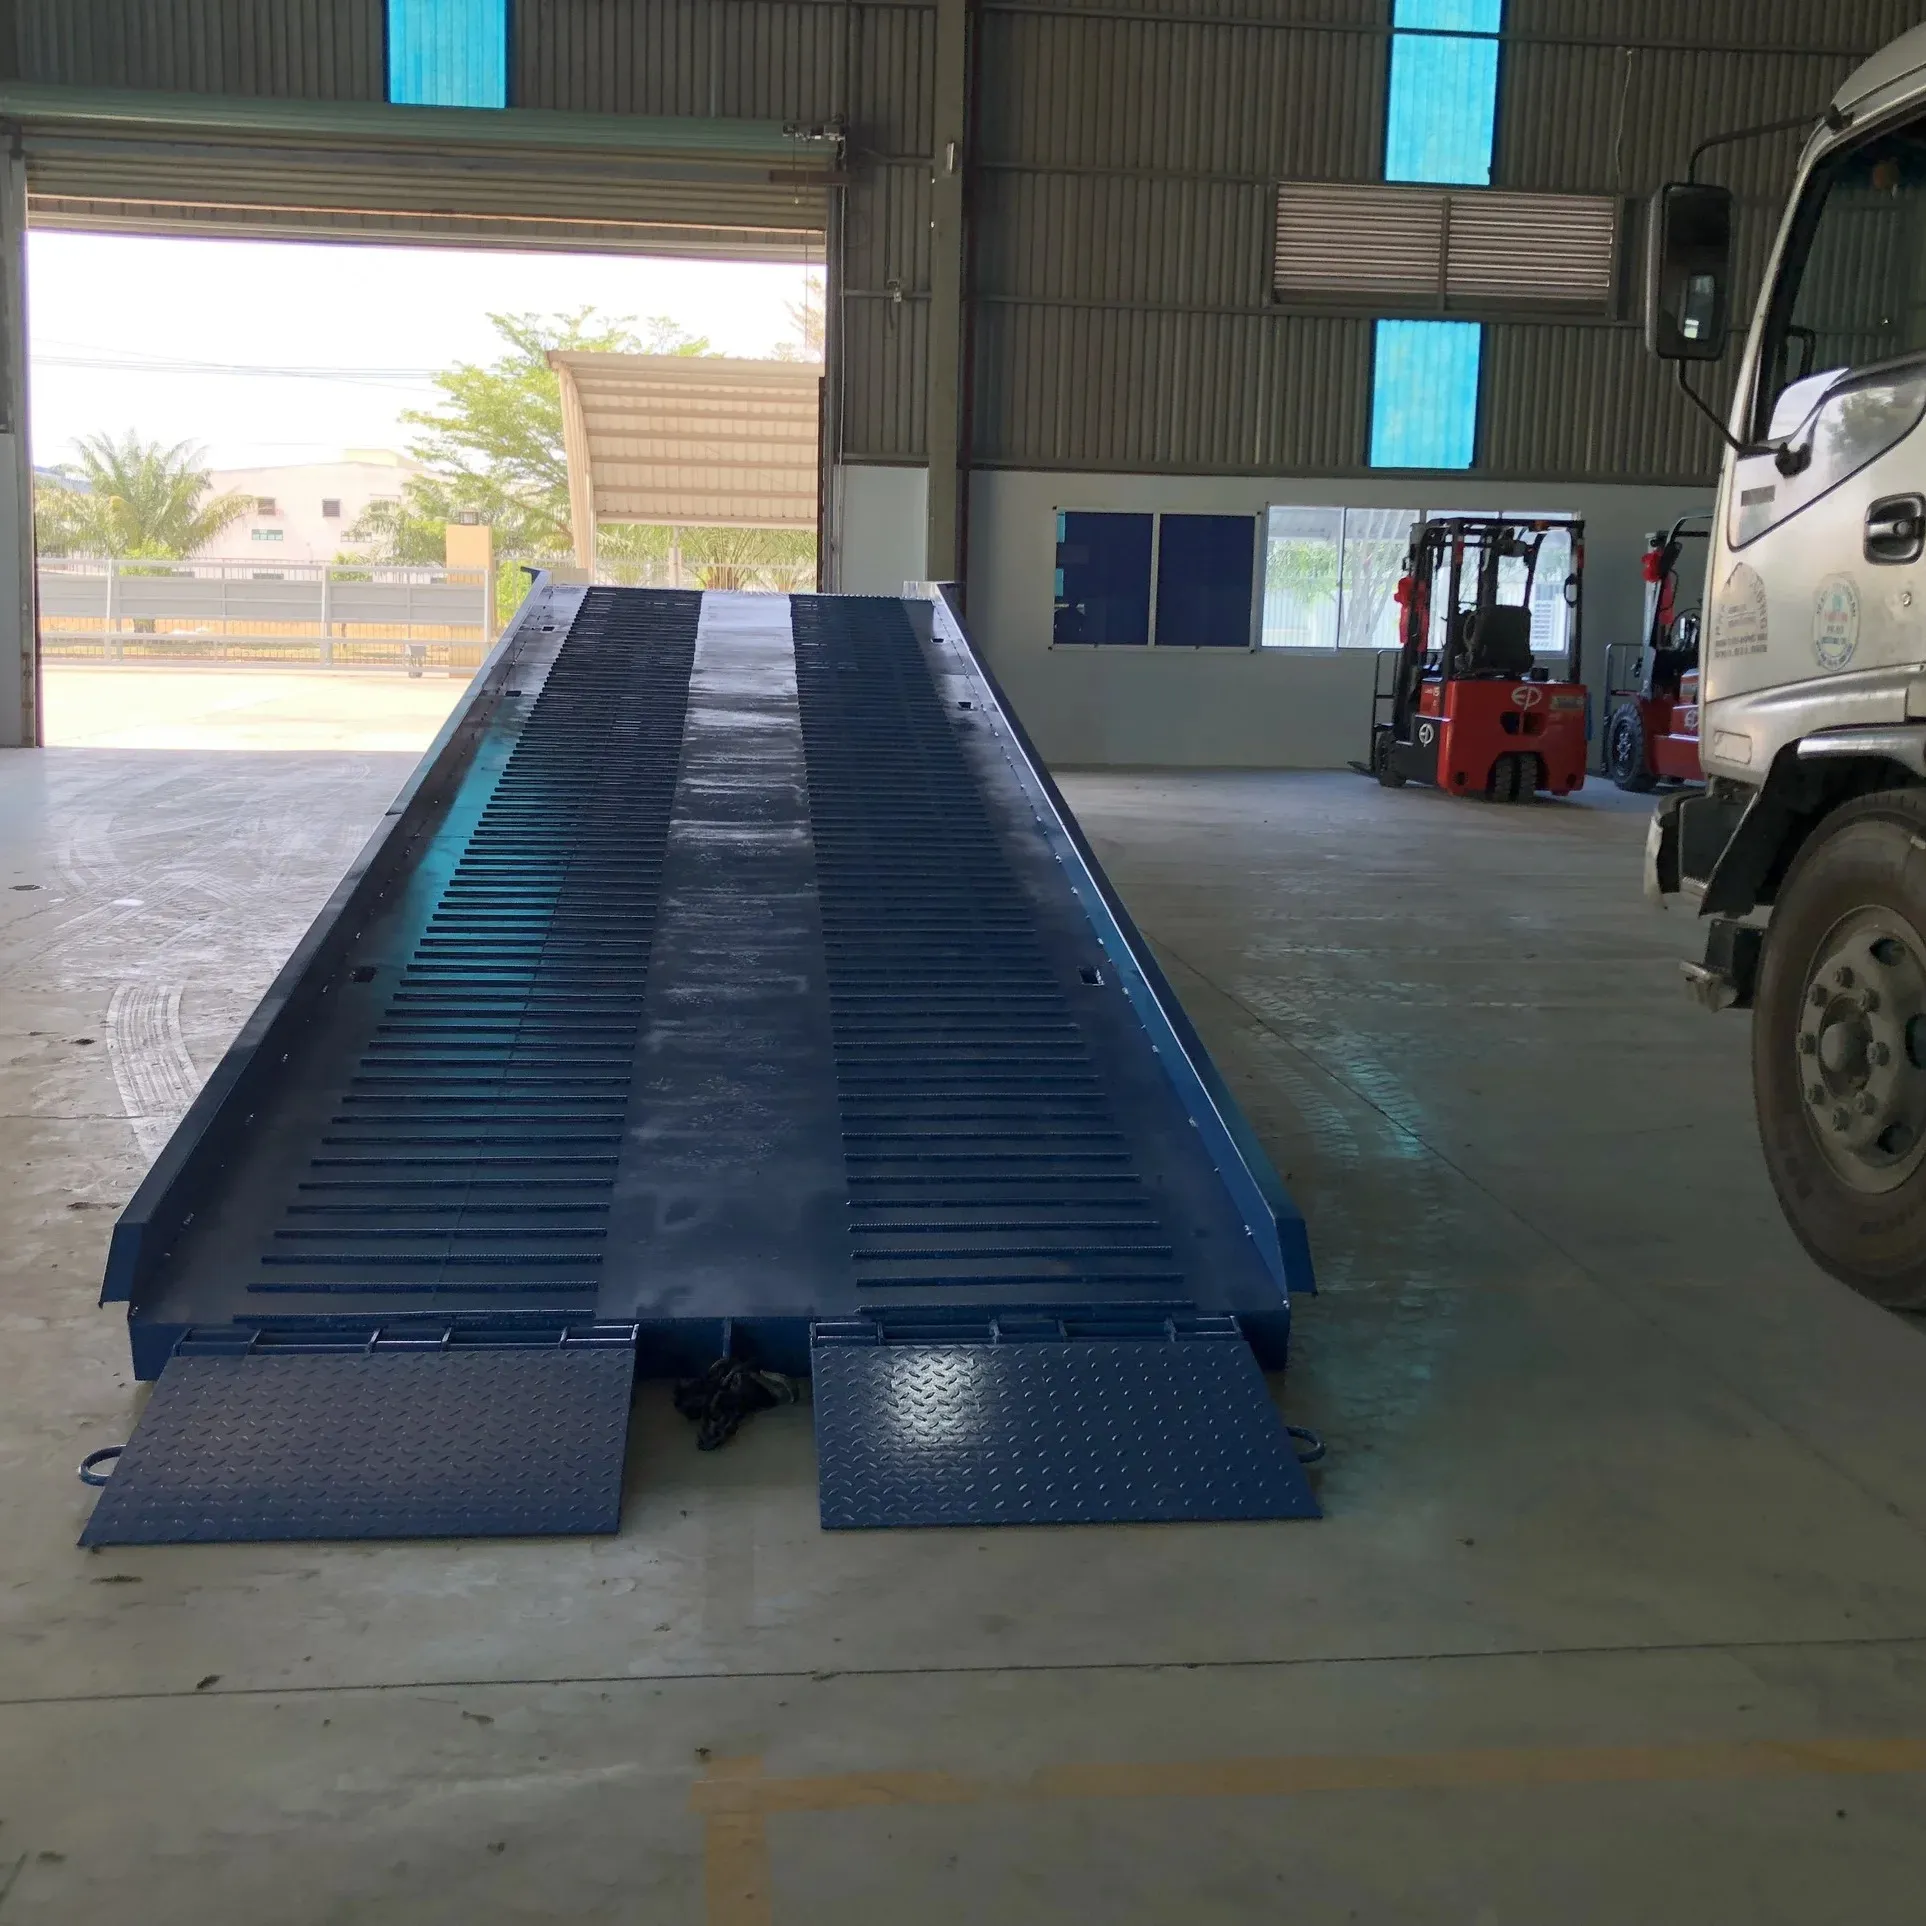 CE-Zertifizierung 10T-S gabelstapler rampe mobile Ladestation komfortabel kombiniert mit Containerboden aus Vietnam 1 Jahr Garantie